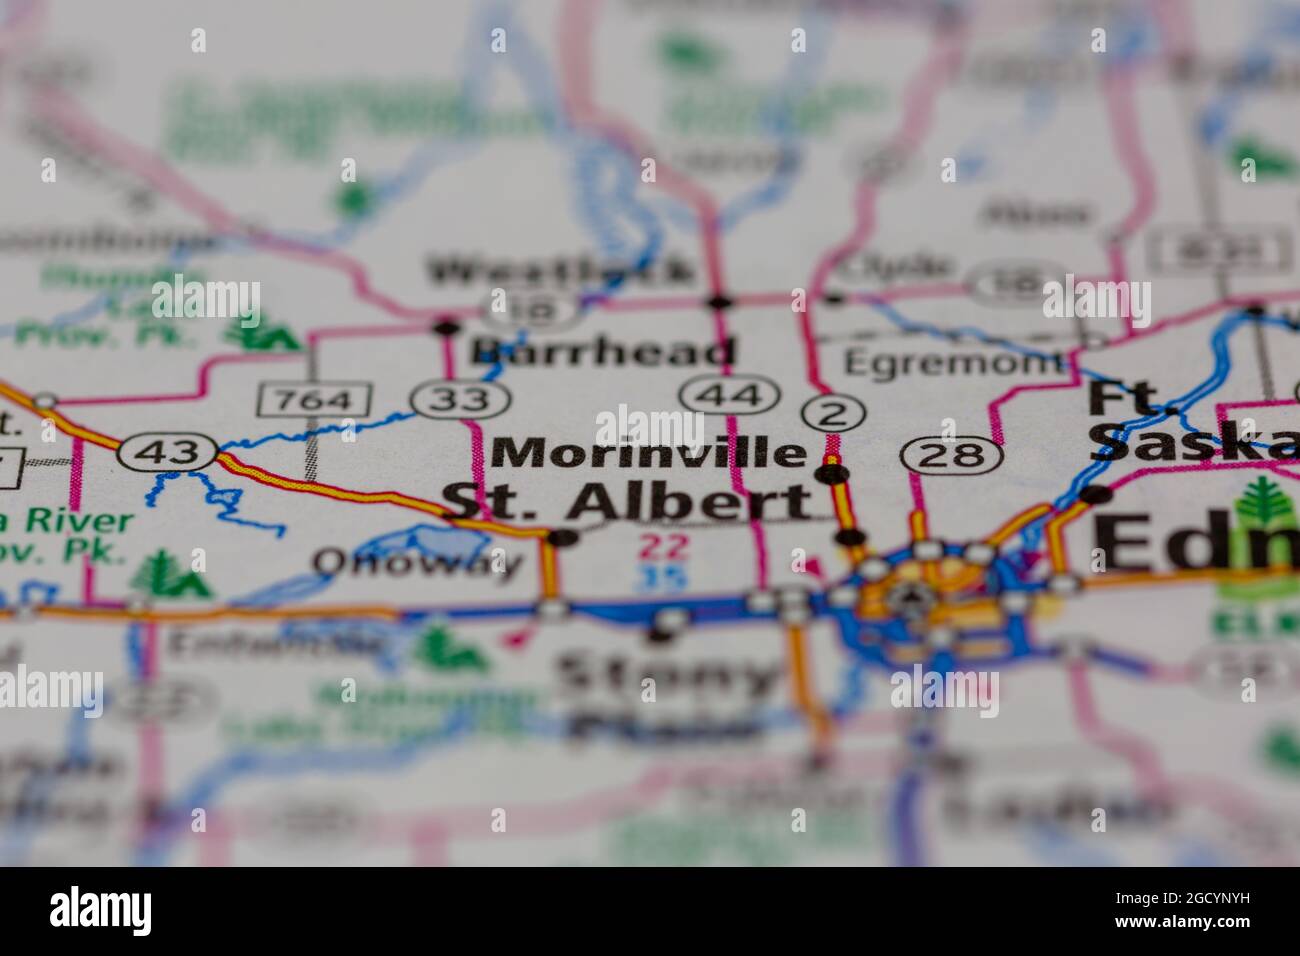 Morinville Alberta Kanada auf einer Straßenkarte oder Geografie-Karte angezeigt Stockfoto